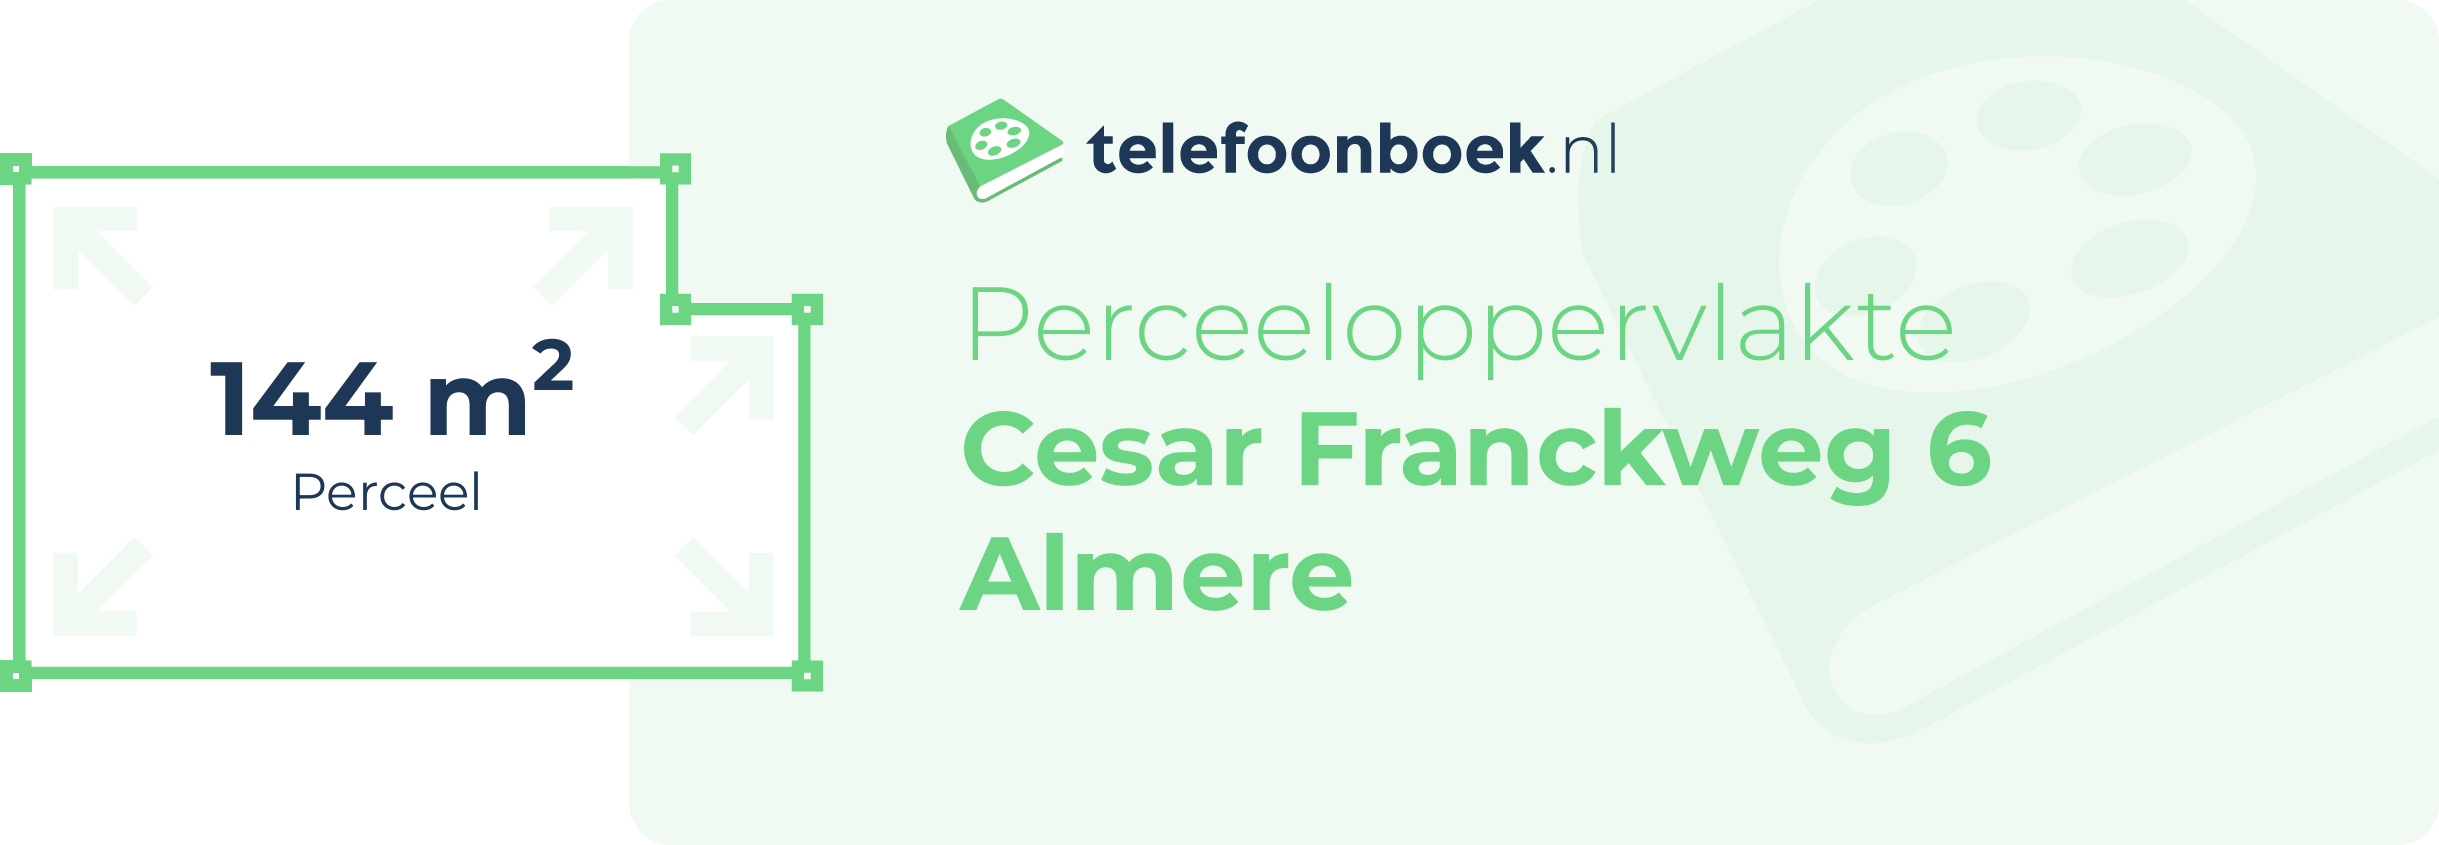 Perceeloppervlakte Cesar Franckweg 6 Almere